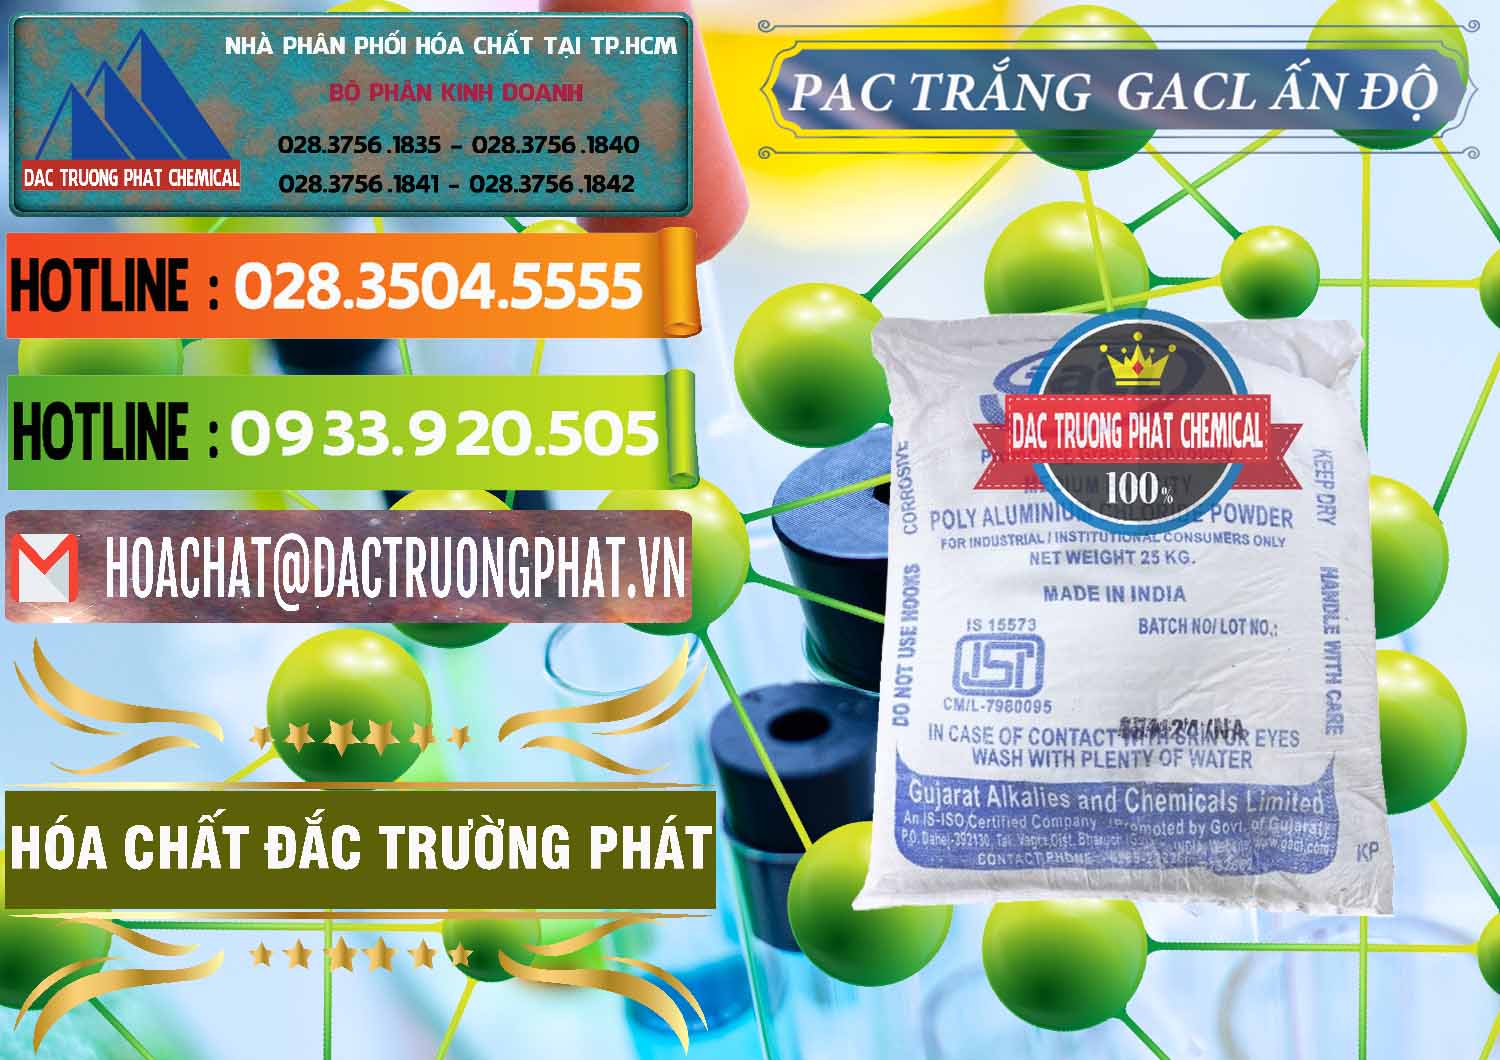 Nơi chuyên cung ứng ( bán ) PAC - Polyaluminium Chloride Trắng GACL Ấn Độ India - 0266 - Cty kinh doanh - cung cấp hóa chất tại TP.HCM - cungcaphoachat.com.vn